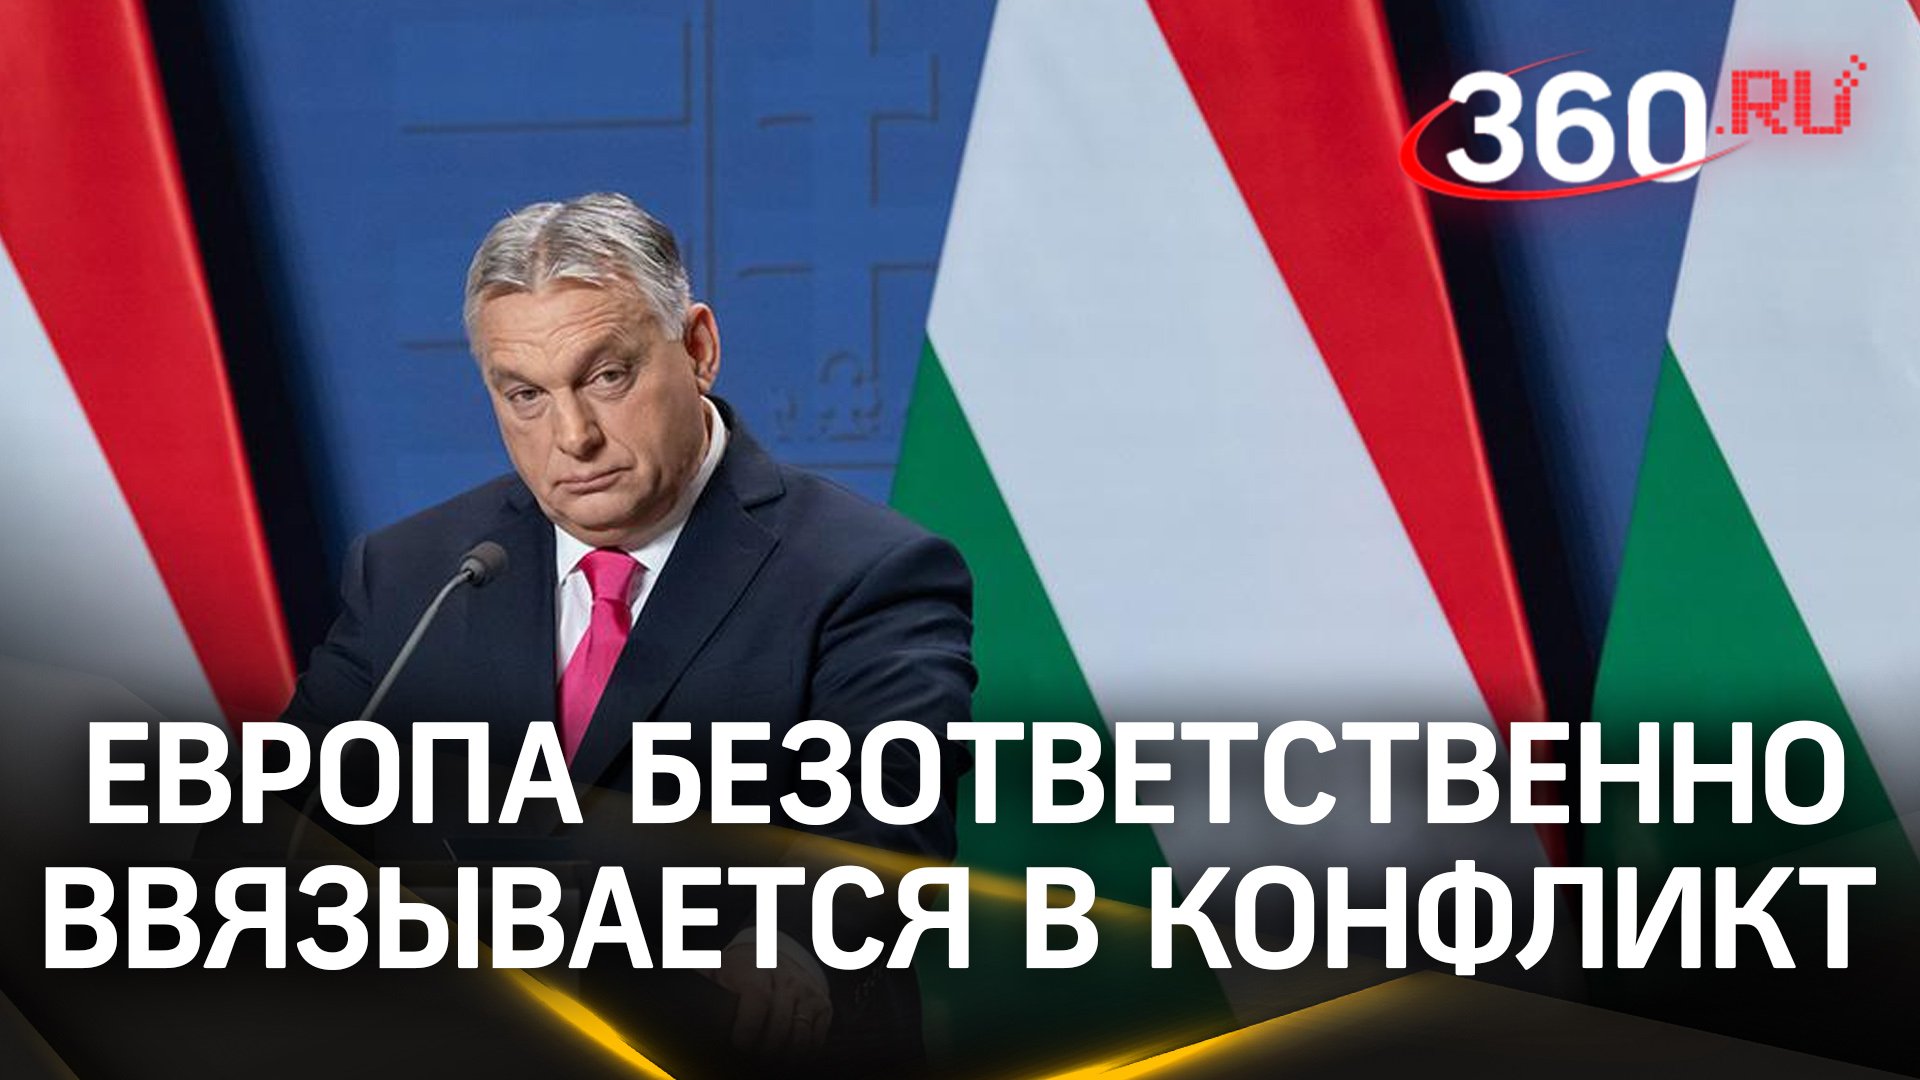 Европа безответственна в своей помощи Украине - Орбан. Согласны ли с этим Макрон и Шольц?